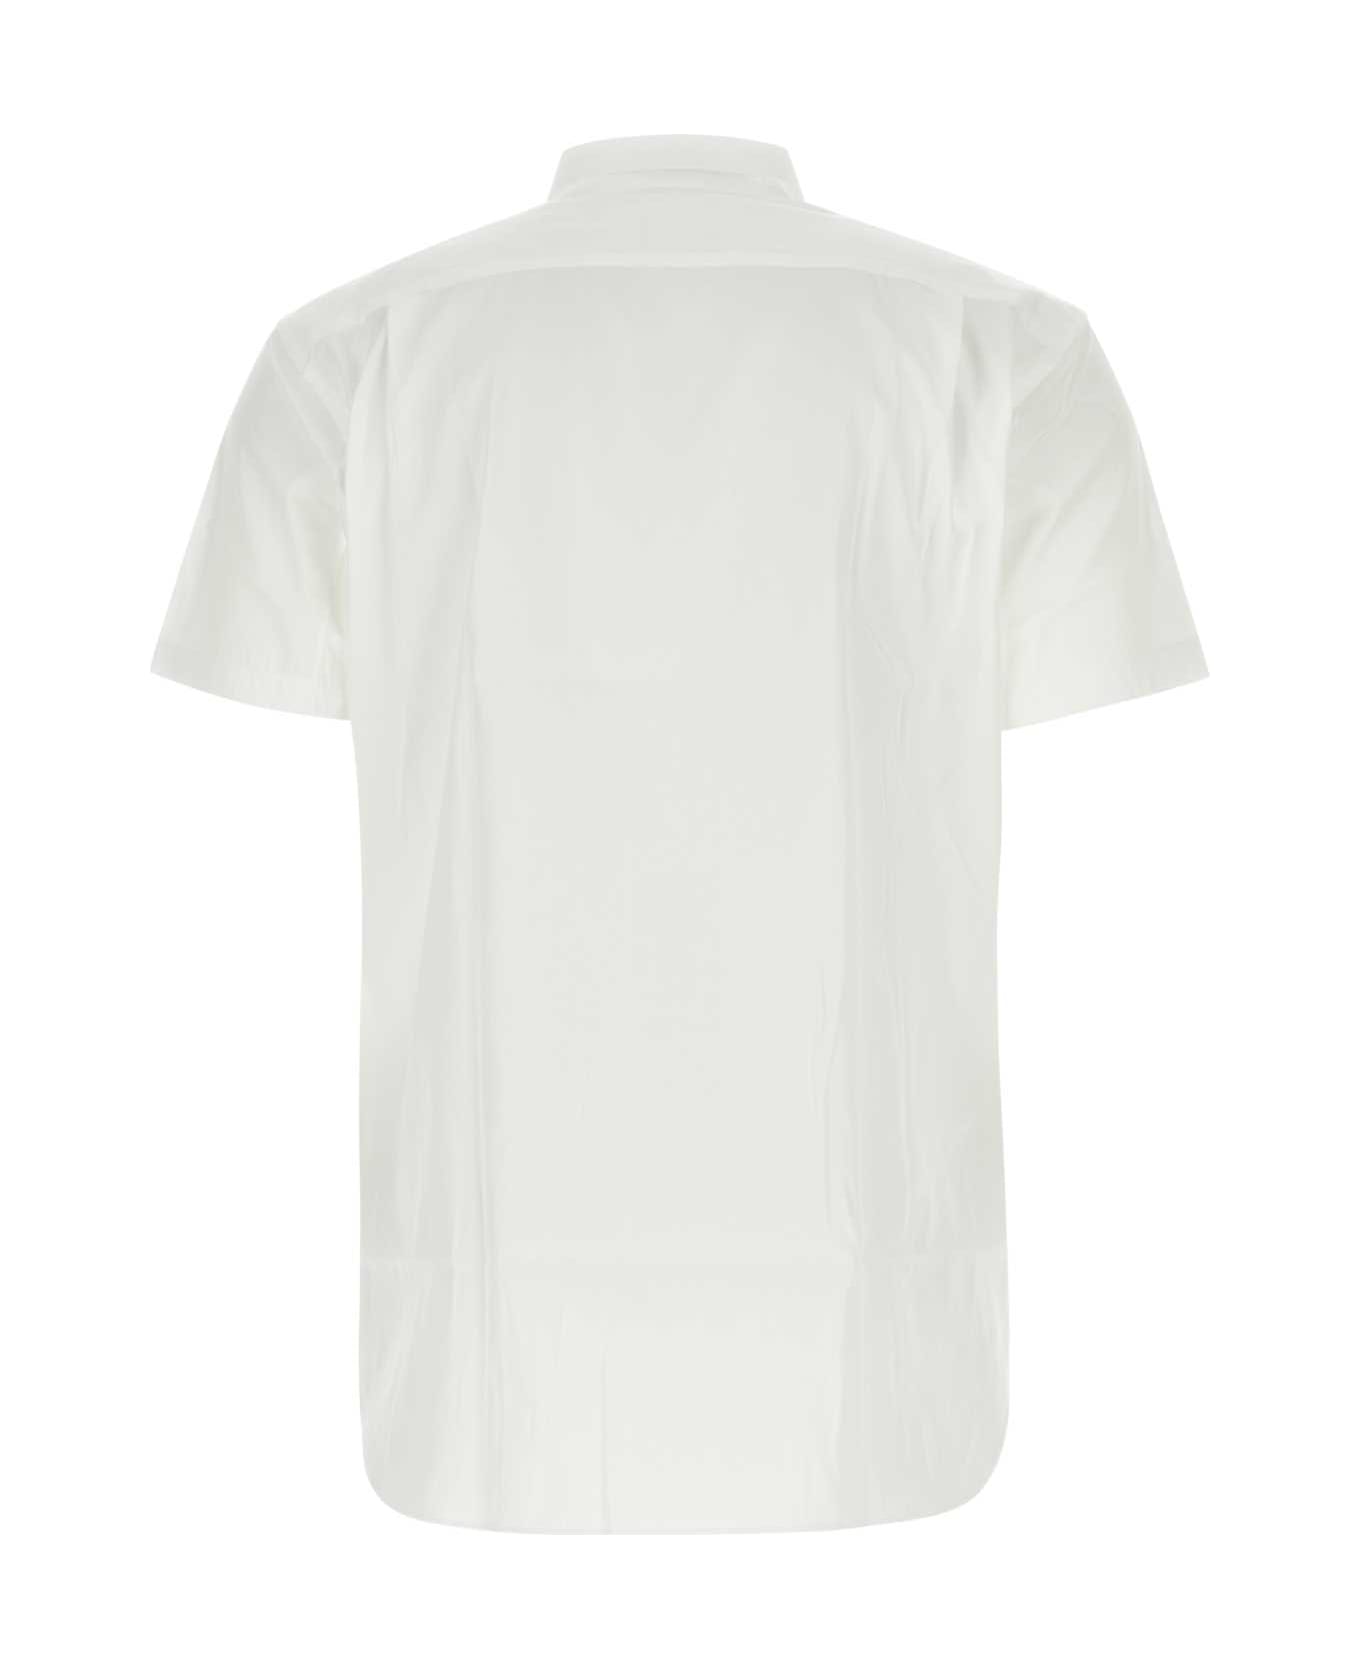 Comme des Garçons Shirt White Poplin Shirt - Multicolor シャツ